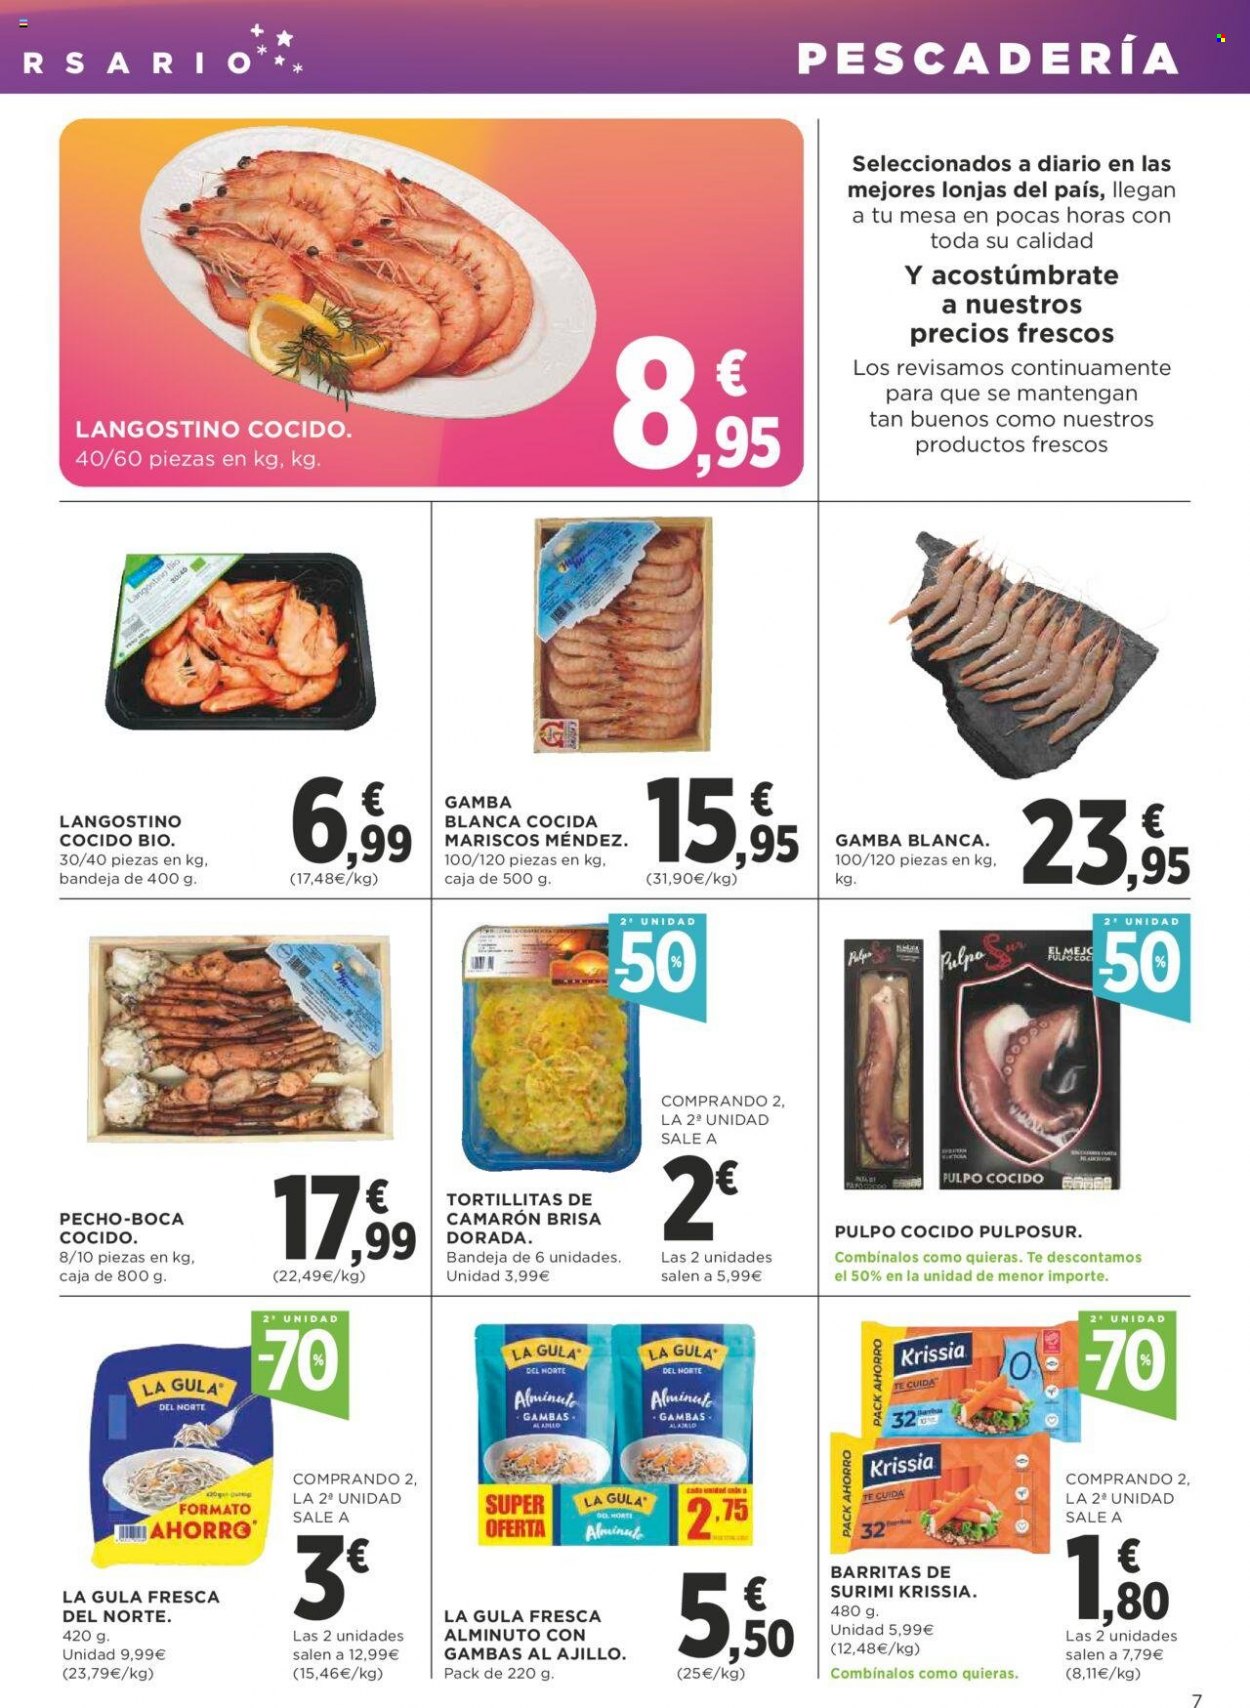 thumbnail - Folleto actual Supercor supermercados - 04/11/21 - 17/11/21 - Ventas - langostino, mariscos, pulpo, surimi, La Gula del Norte. Página 7.